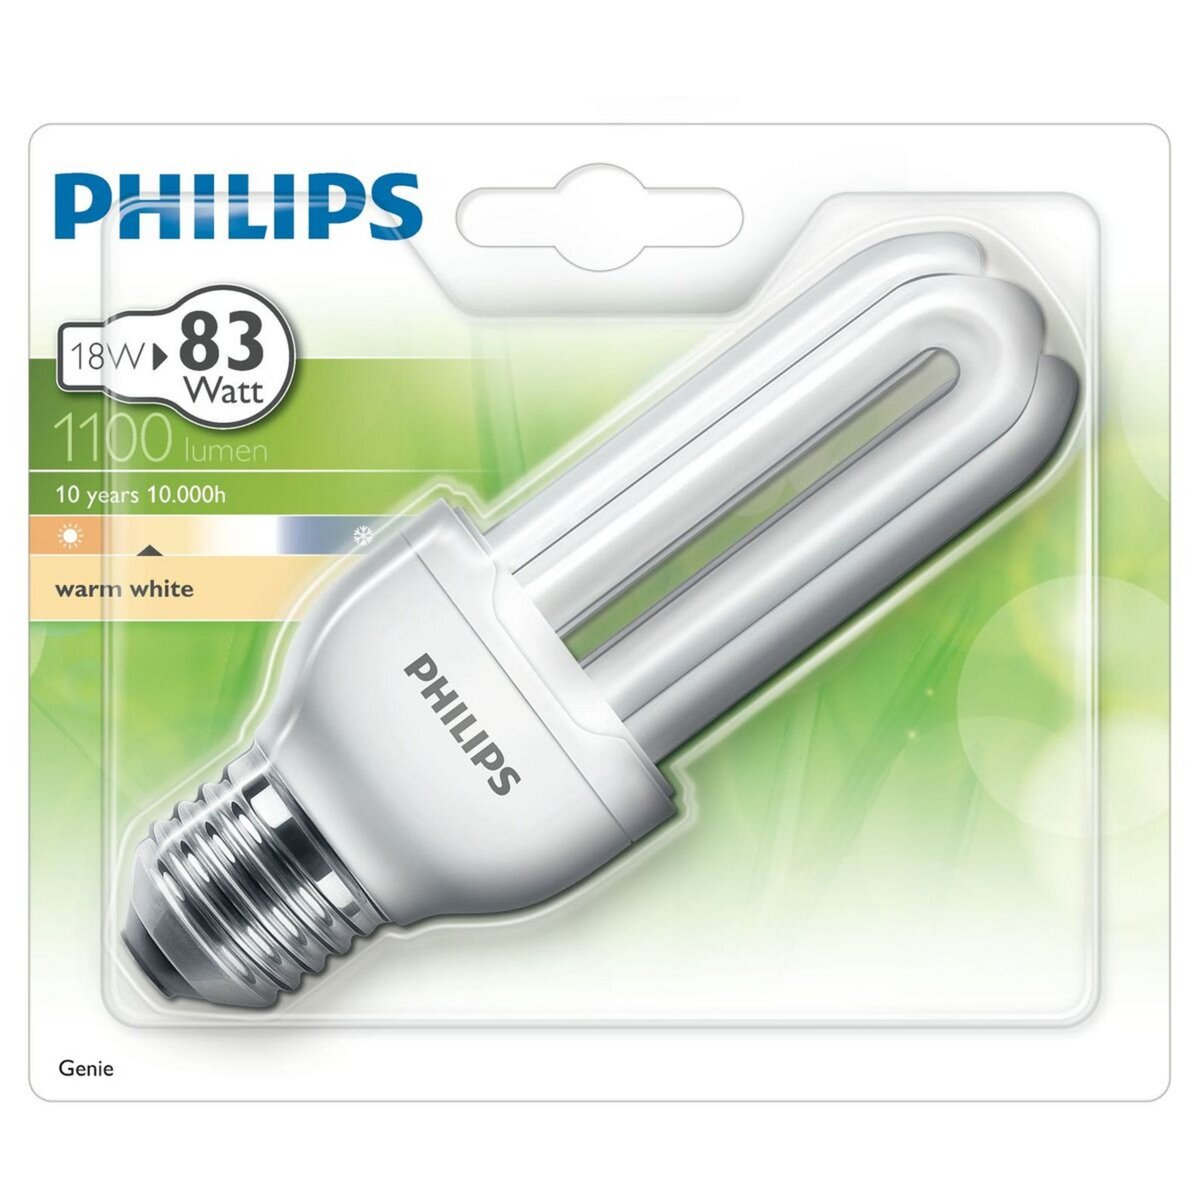 PHILIPS Ampoule génie E27 eco énergie 18w warm light 1100 lumen x1 1100 lumen 1 pièce